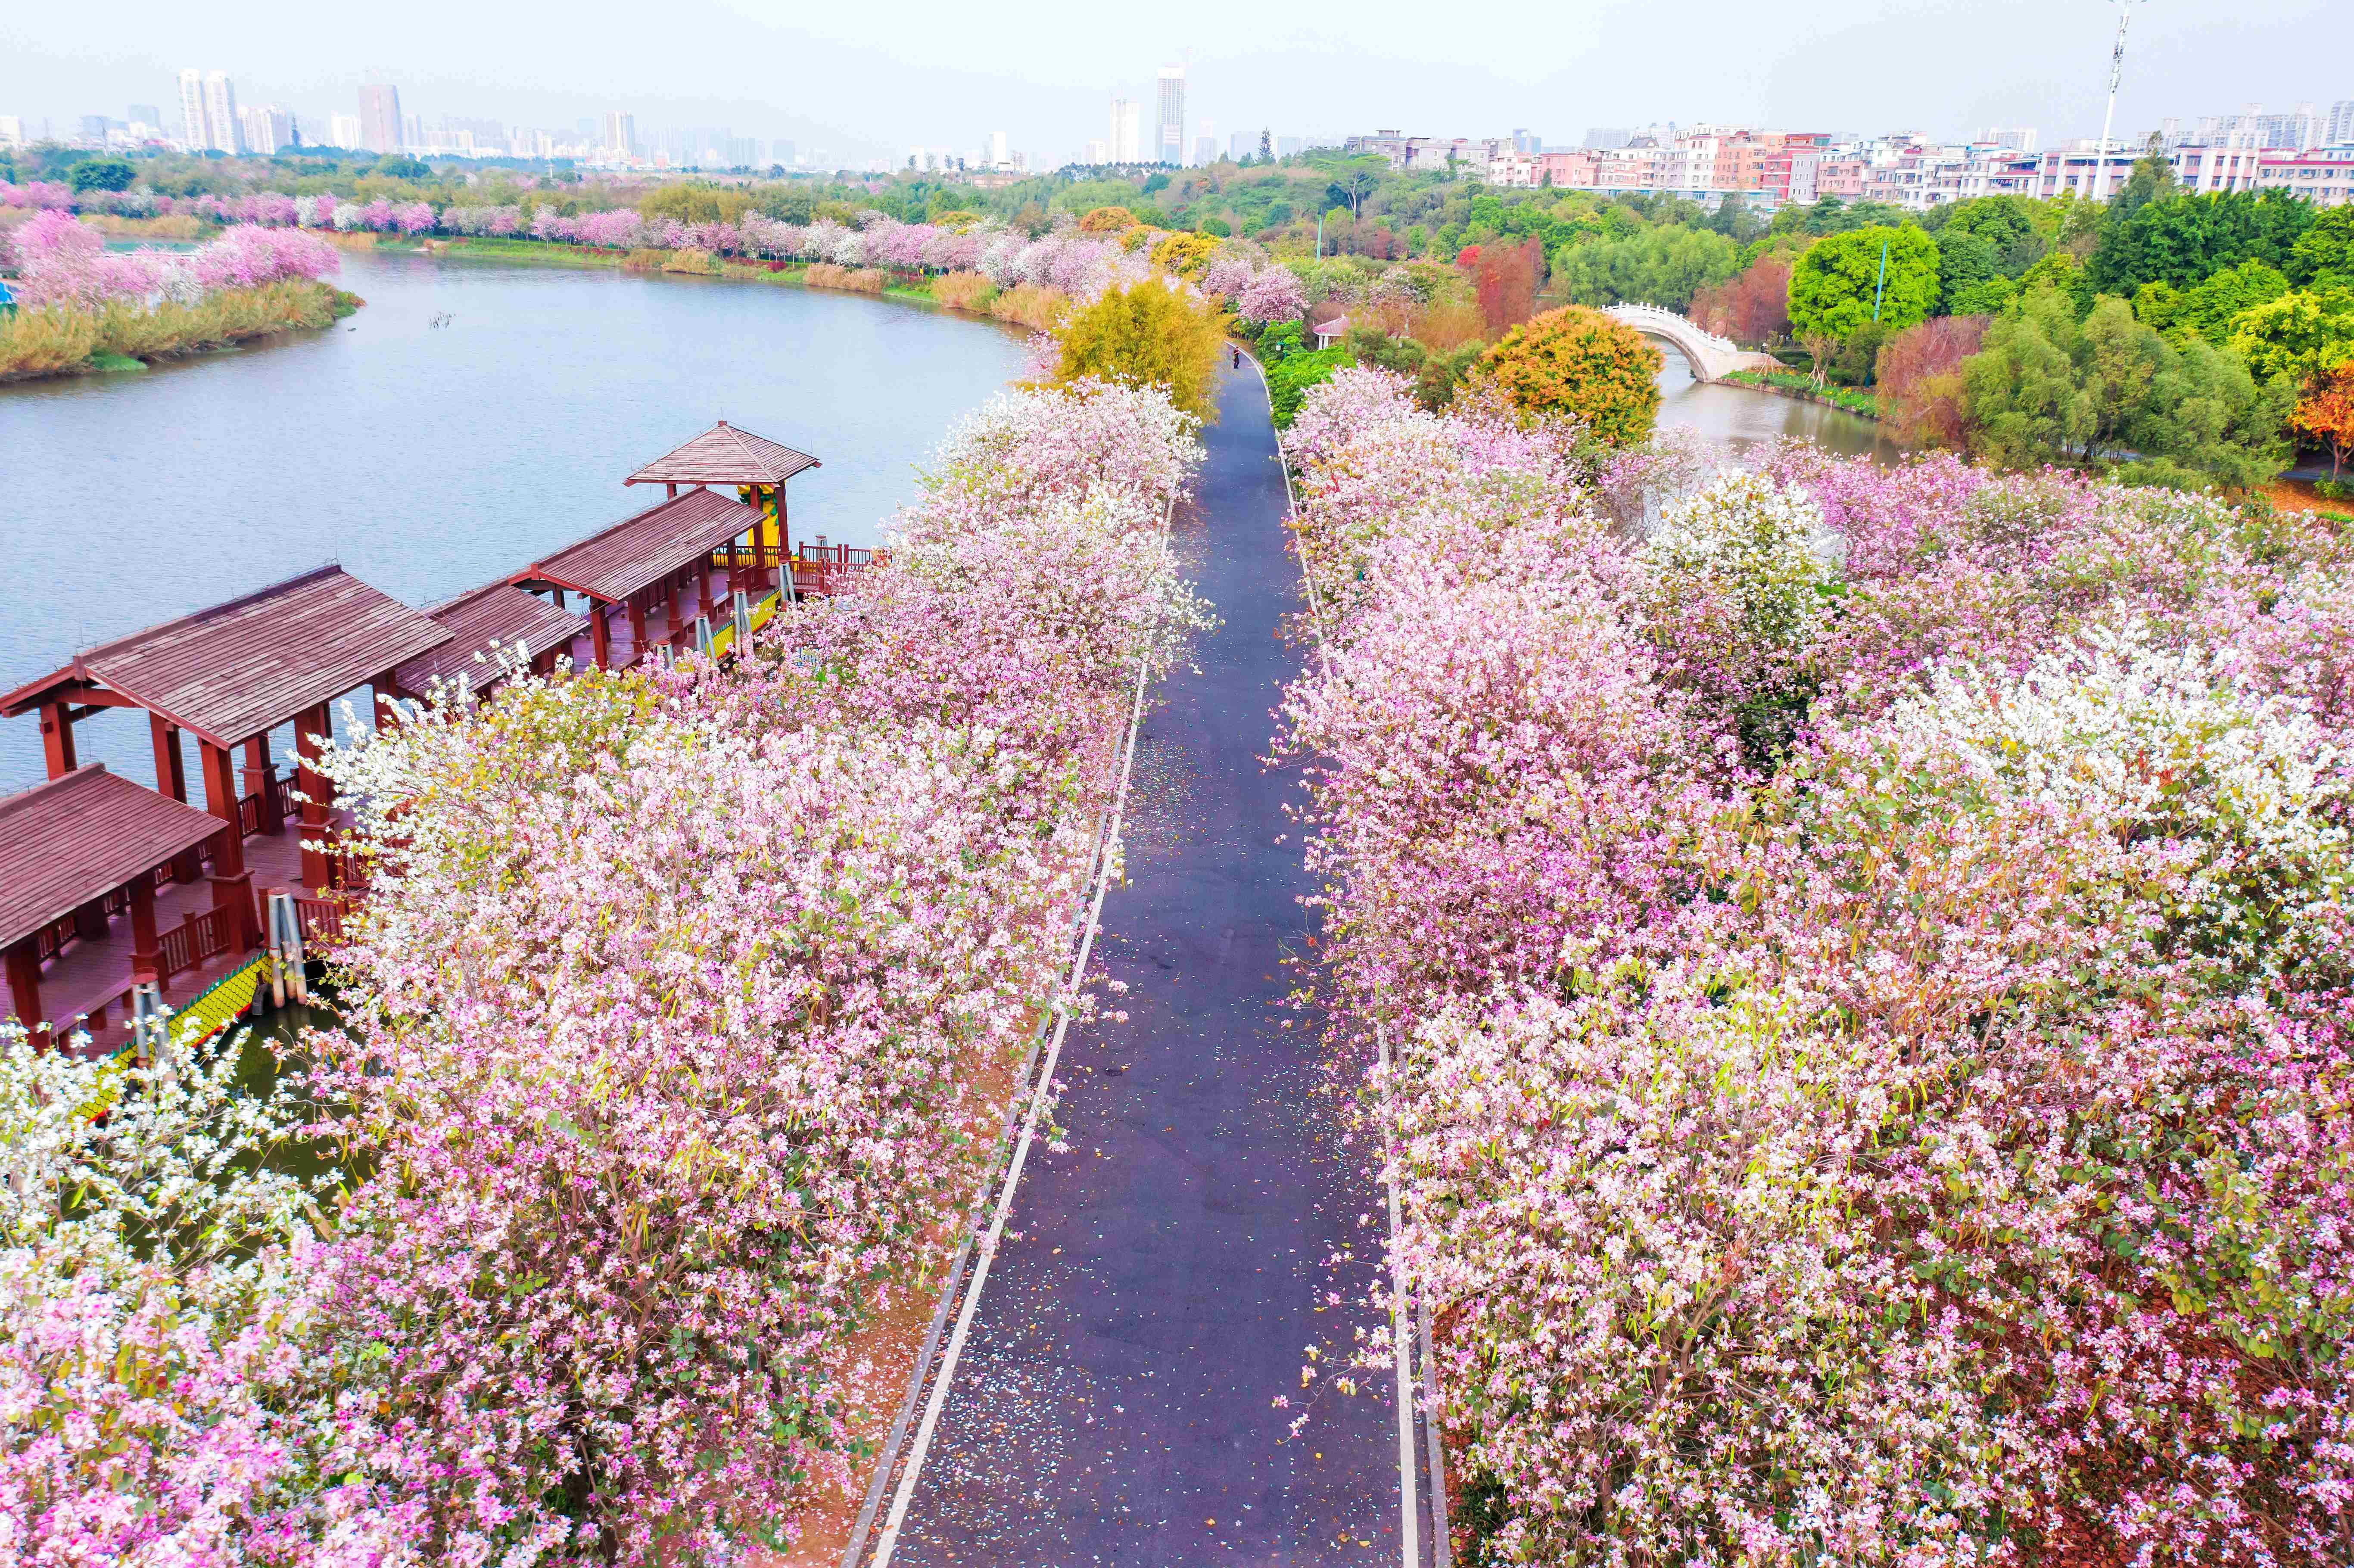 看,广州这个五彩斑斓的春天啊!